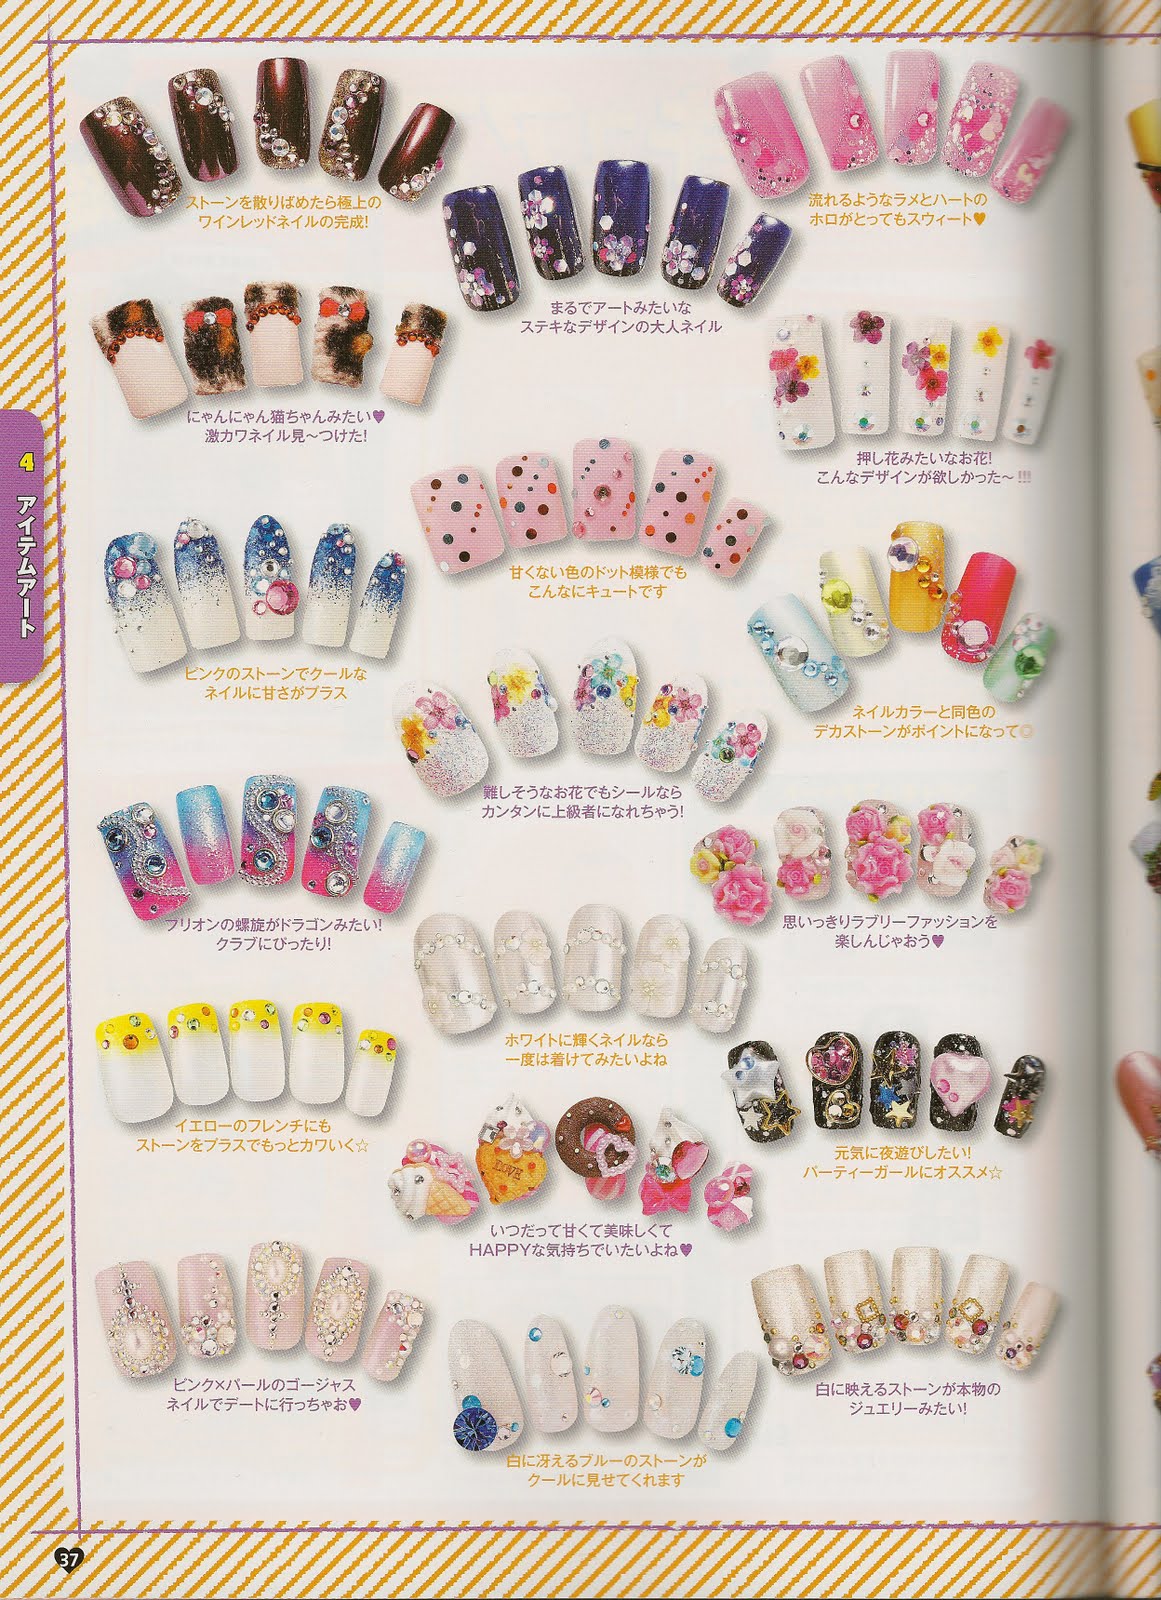 My little world of polish by Lily Nail: japanese nail art magazine